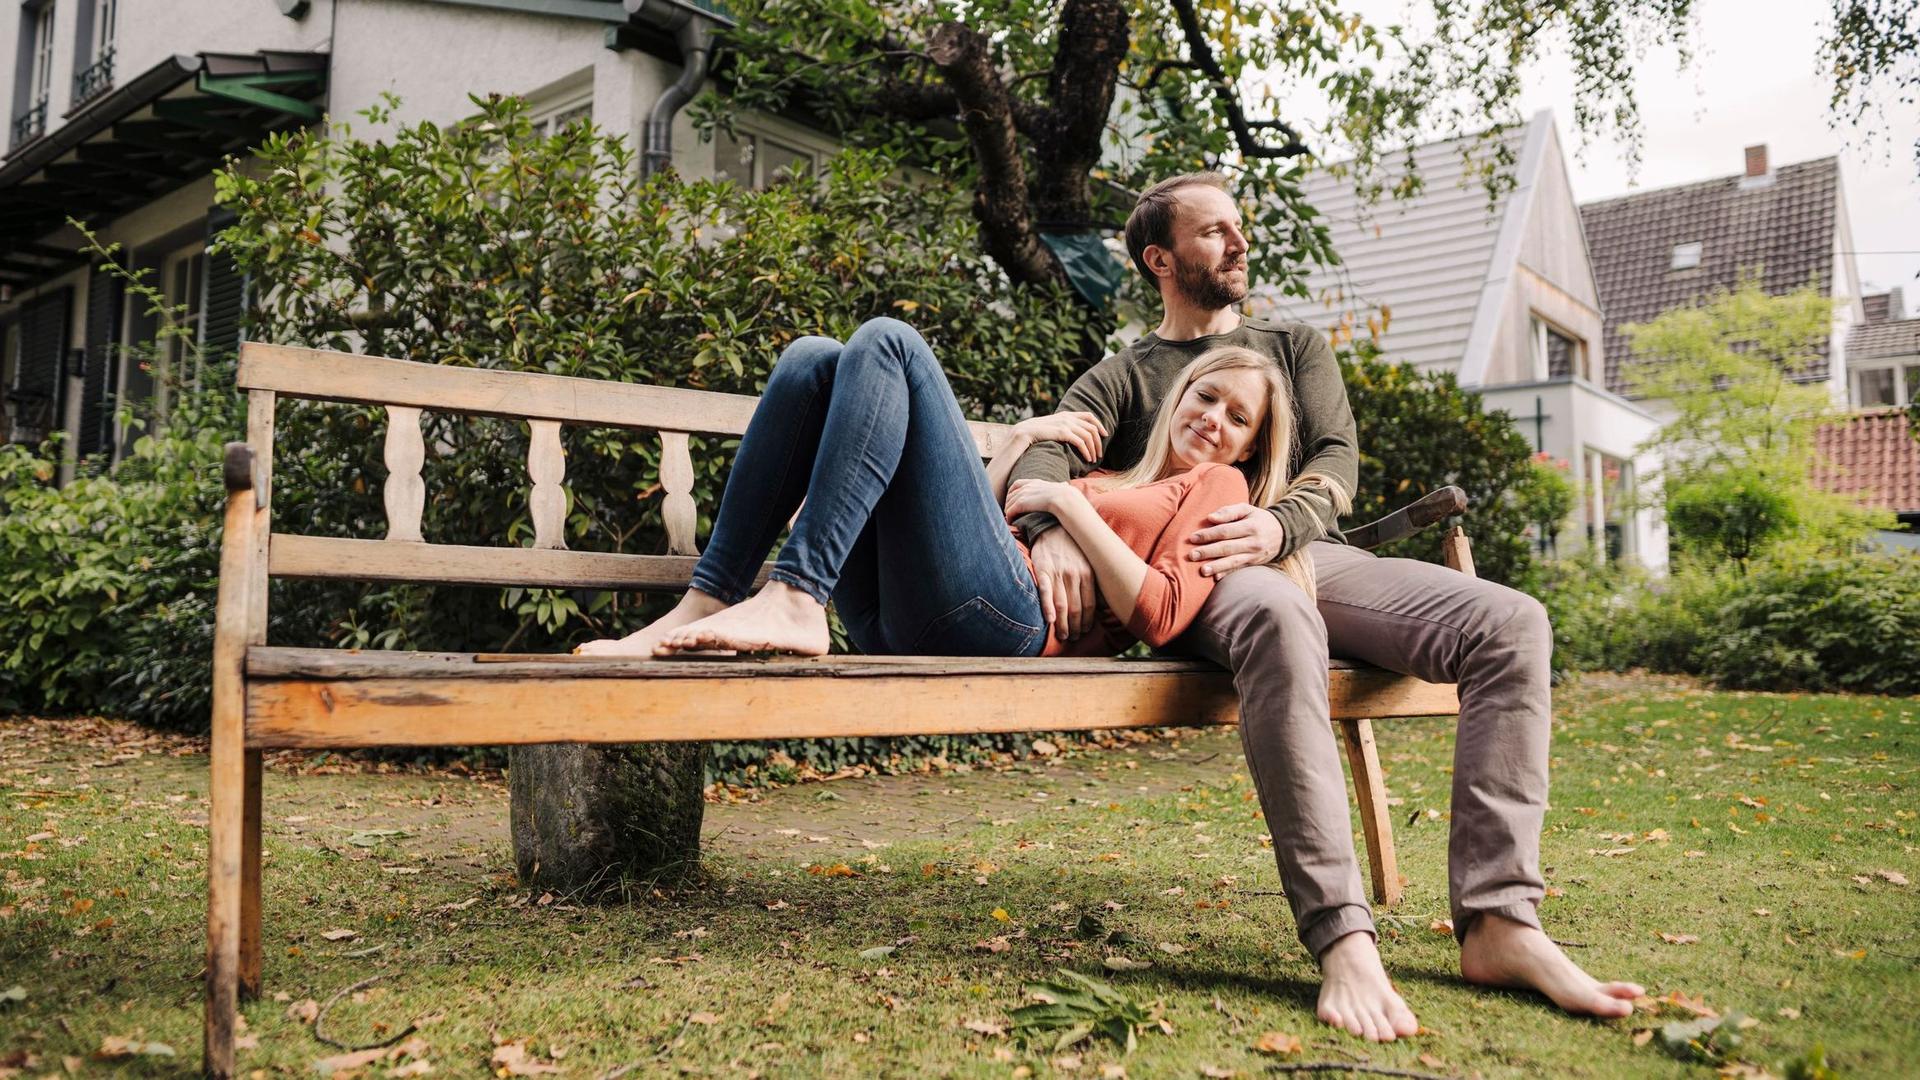 Ein Paar entspannt auf einer Parkbank im Grünen vor Häusern, die Frau lehnt sich an den Mann.